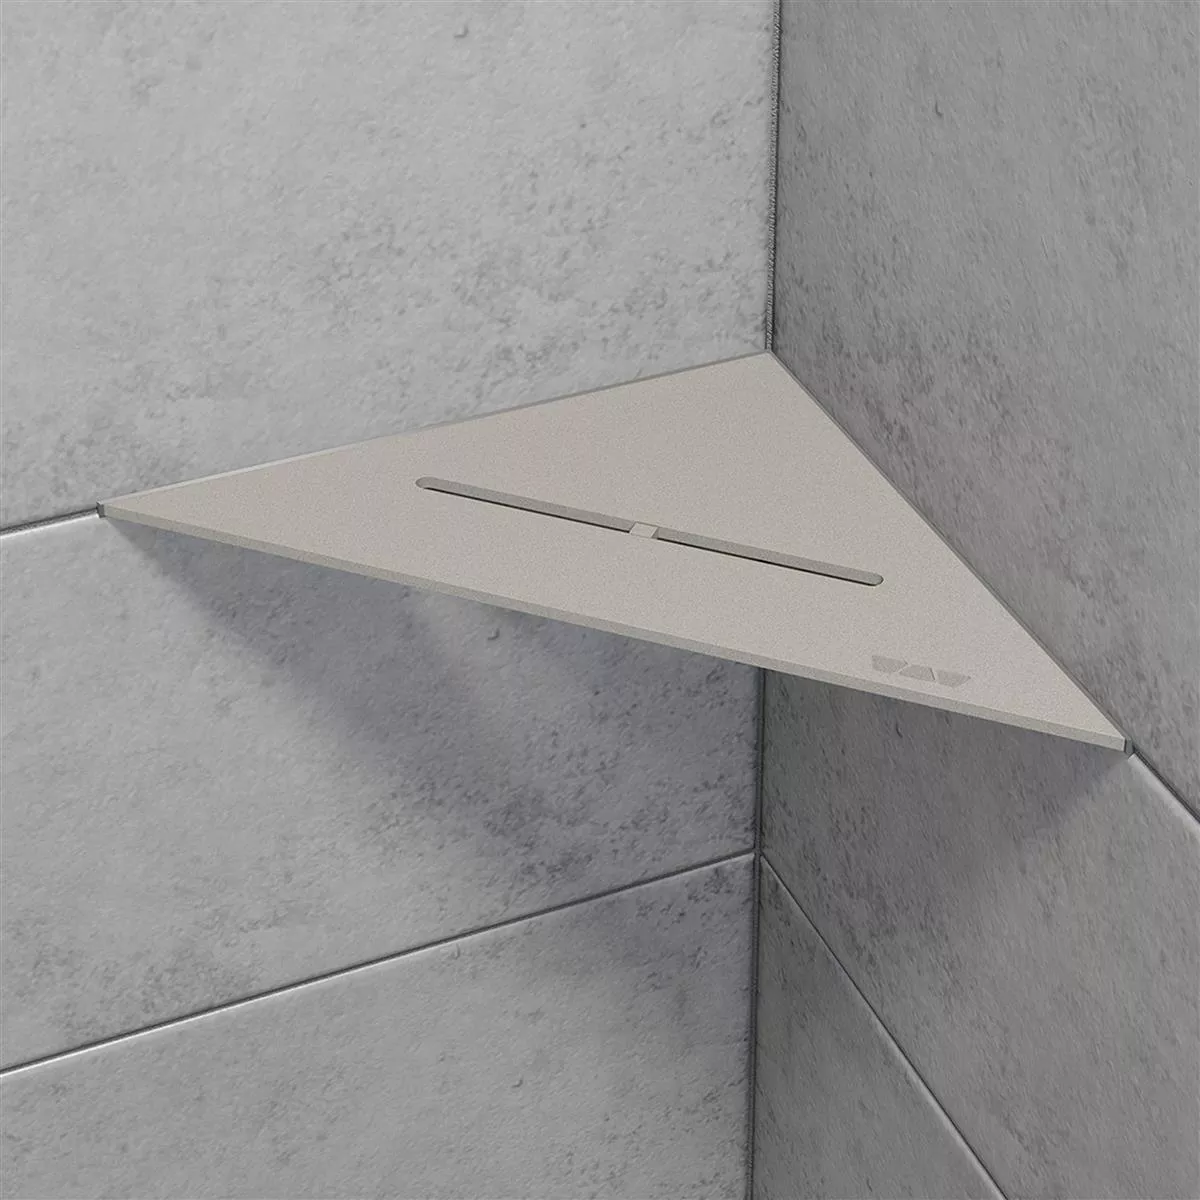 Brusehylde væghylde Schlüter trekant 21x21cm ren grafitsort